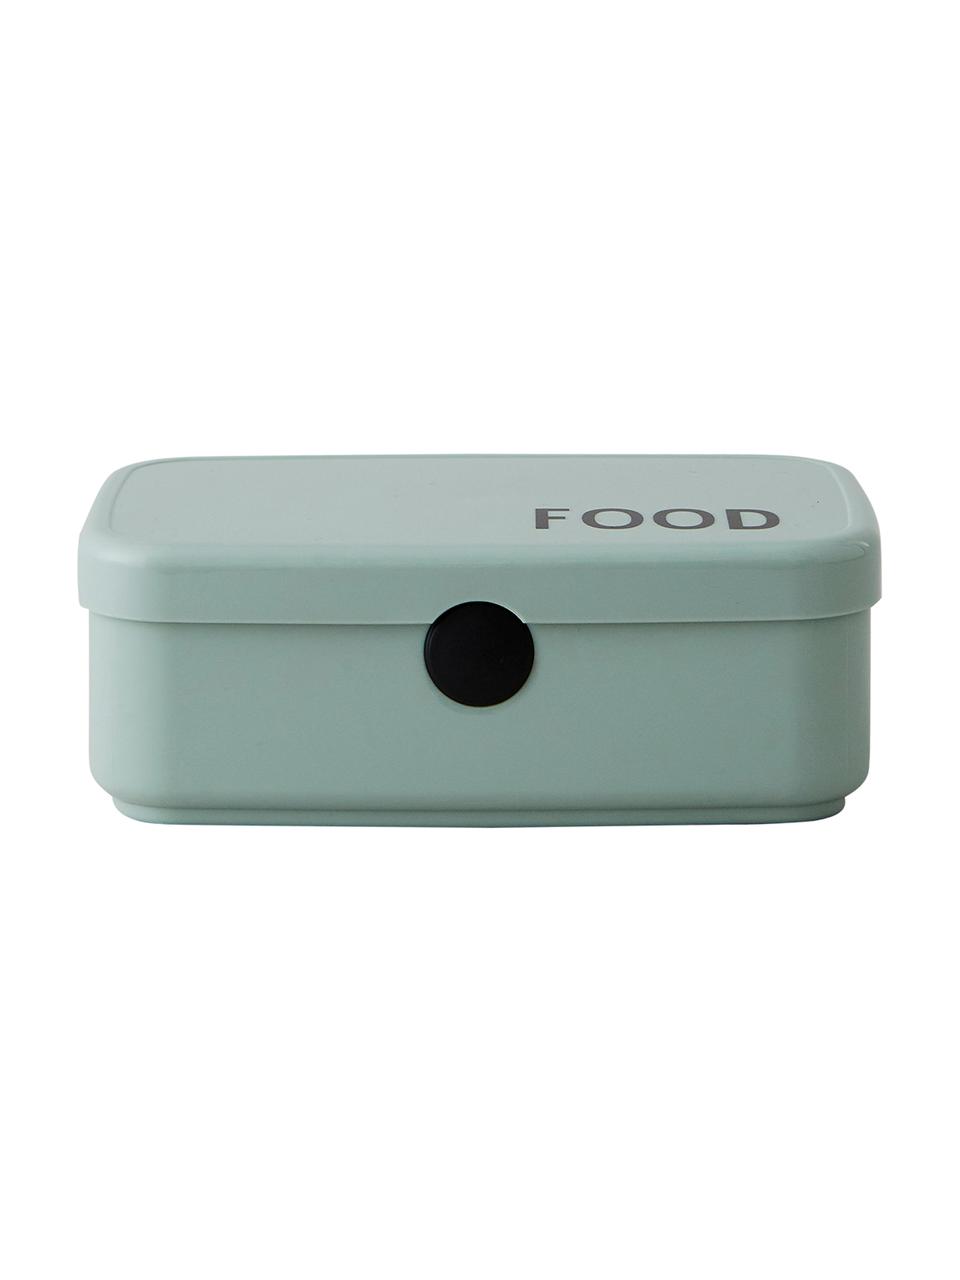 Pudełko na lunch Food, Nowoczesne tworzywo TRITAN (tworzywo sztuczne, bez BPA), Zielony, S 18 x W 6 cm